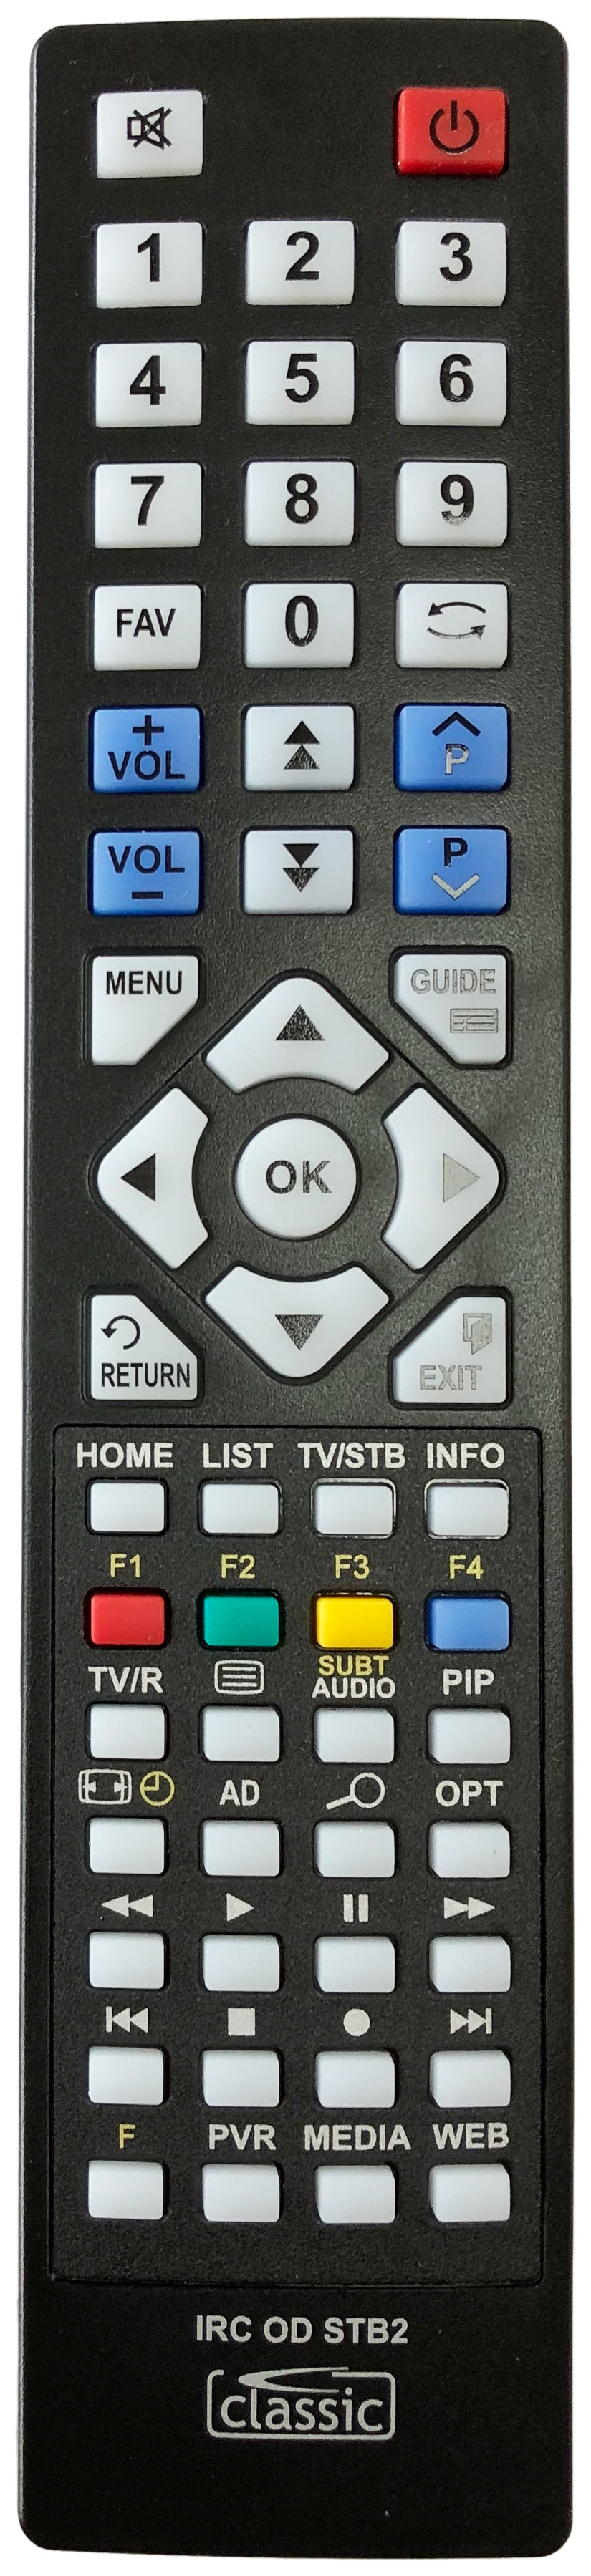 HUMAX HDR-1100S Remote Control Alternative